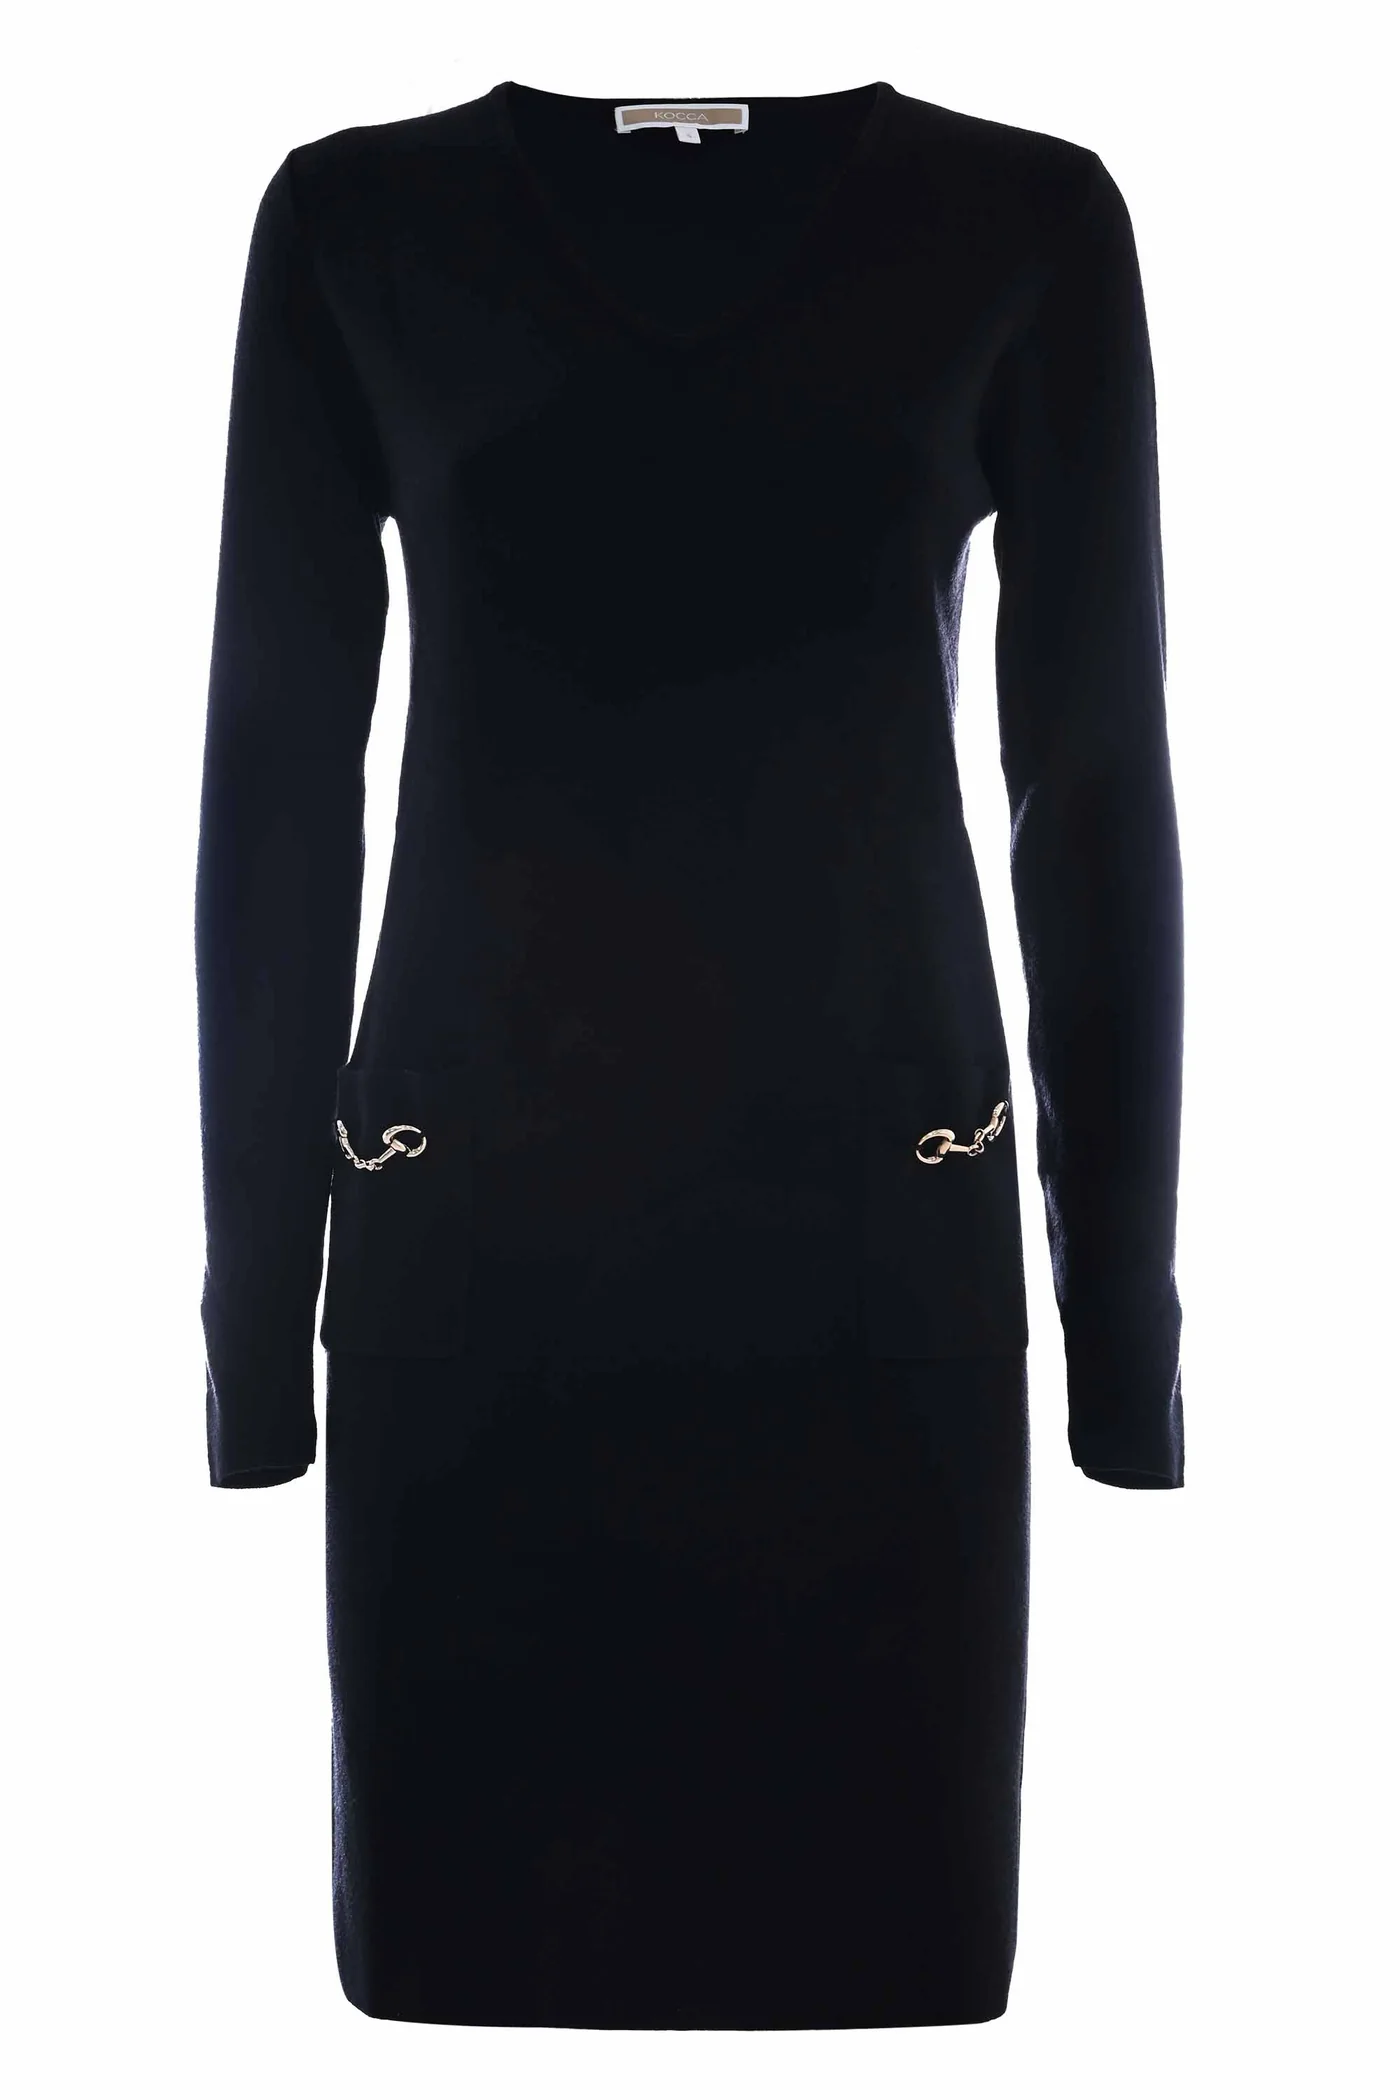 KOCCA vestido negro con escote pico y bolsillos  con aplicación metálica - 5